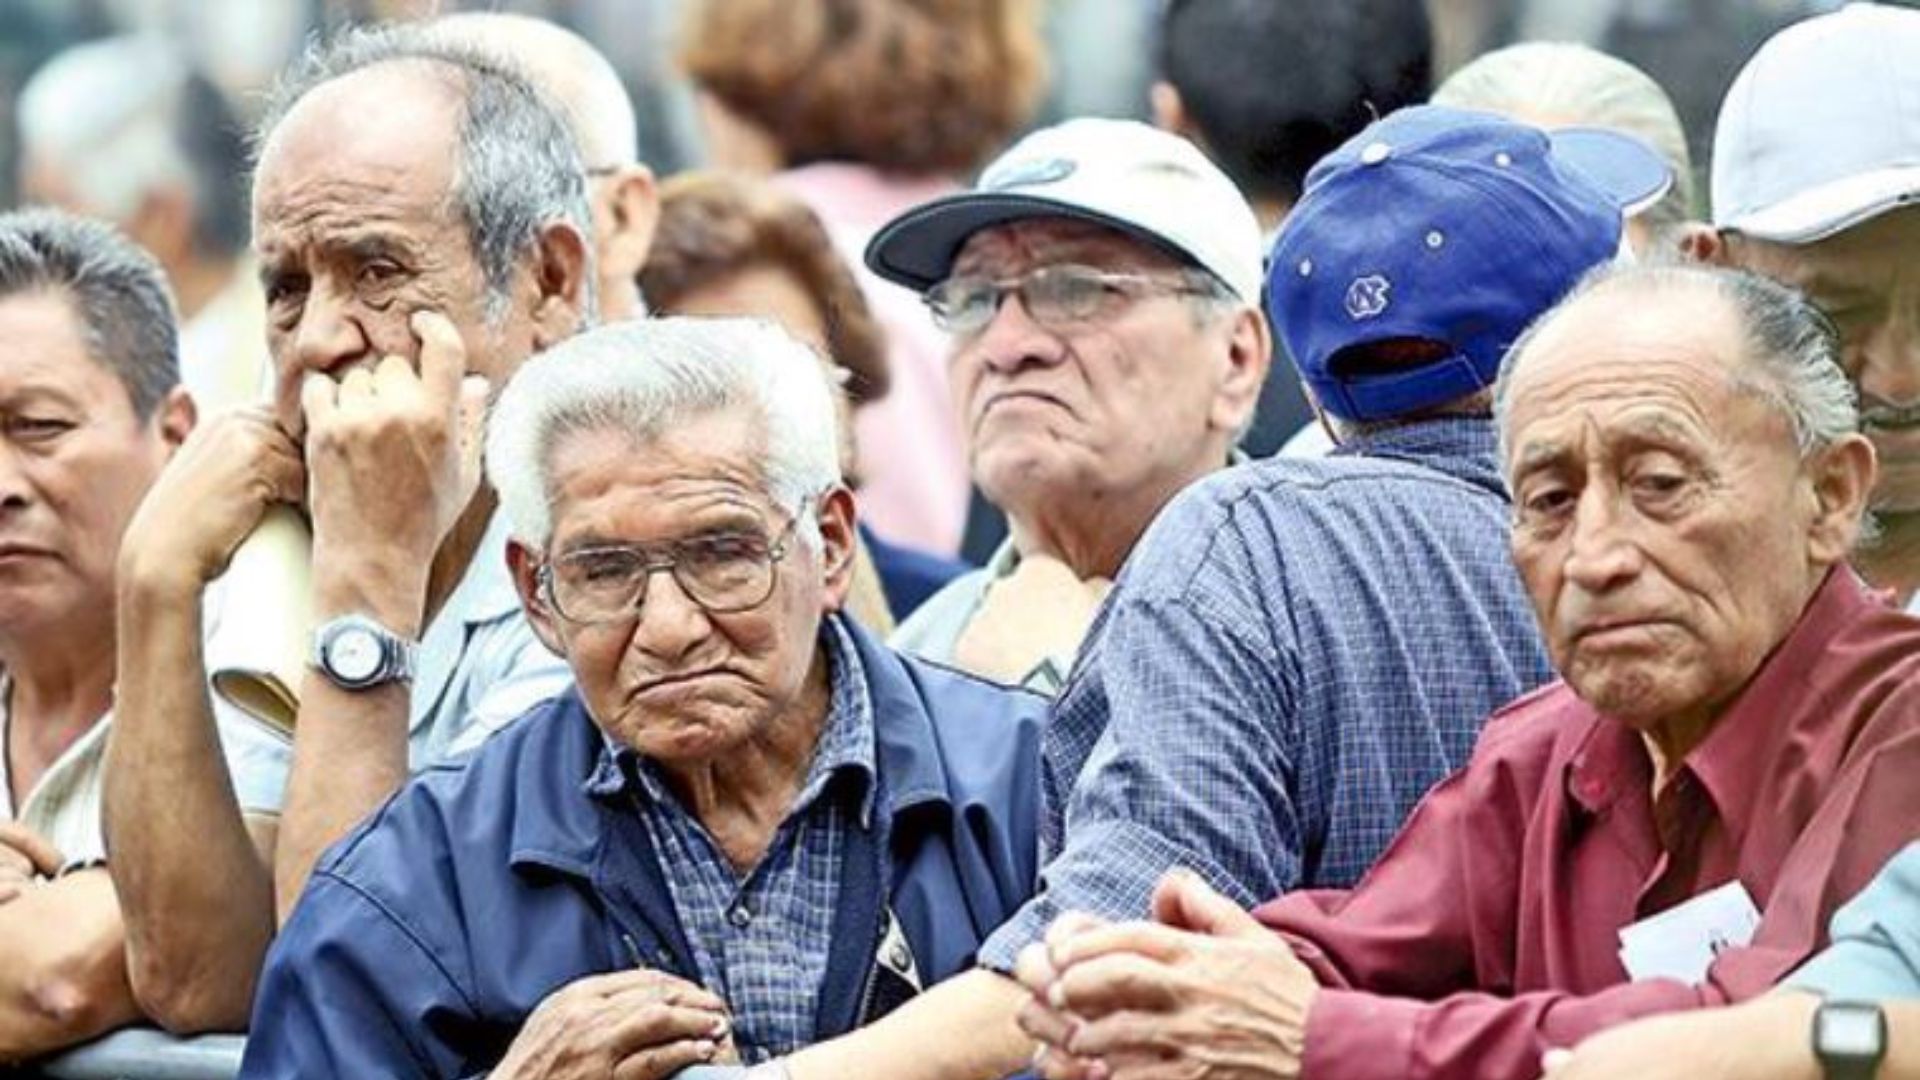 Los colombianos entre los que menos pueden disfrutar su jubilación, según informe de la OCDE